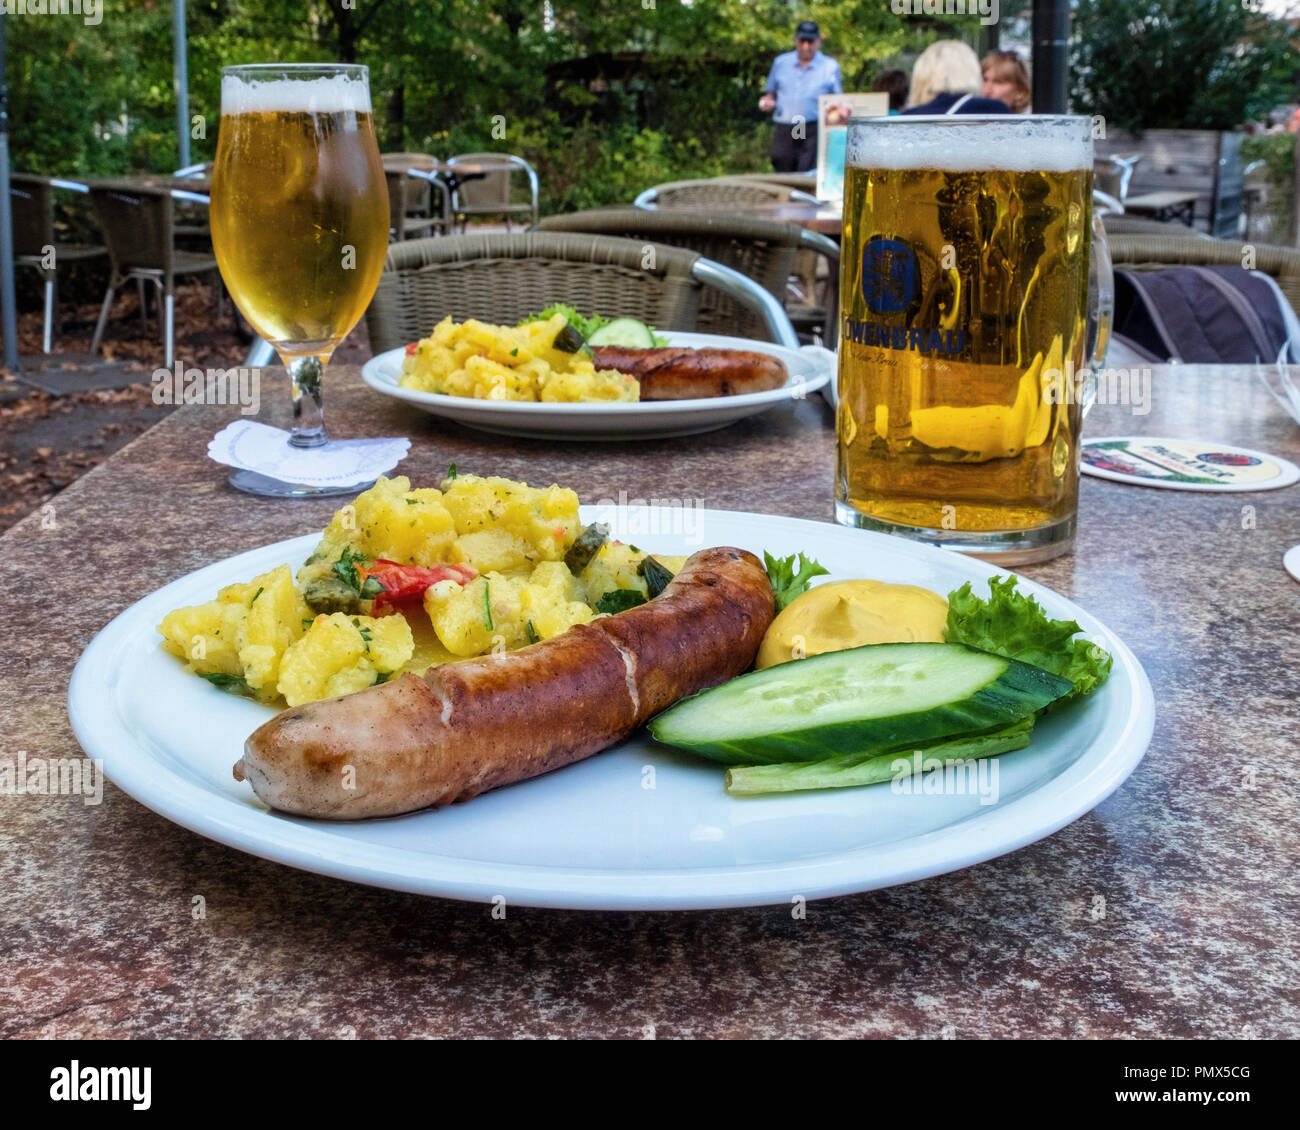 Berlin, Neukölln, Britzer Jardin. Salade de pommes de terre, saucisses & repas moutarde & bières dans glasses on outdoor table de snack-bar servant thés et repas Banque D'Images